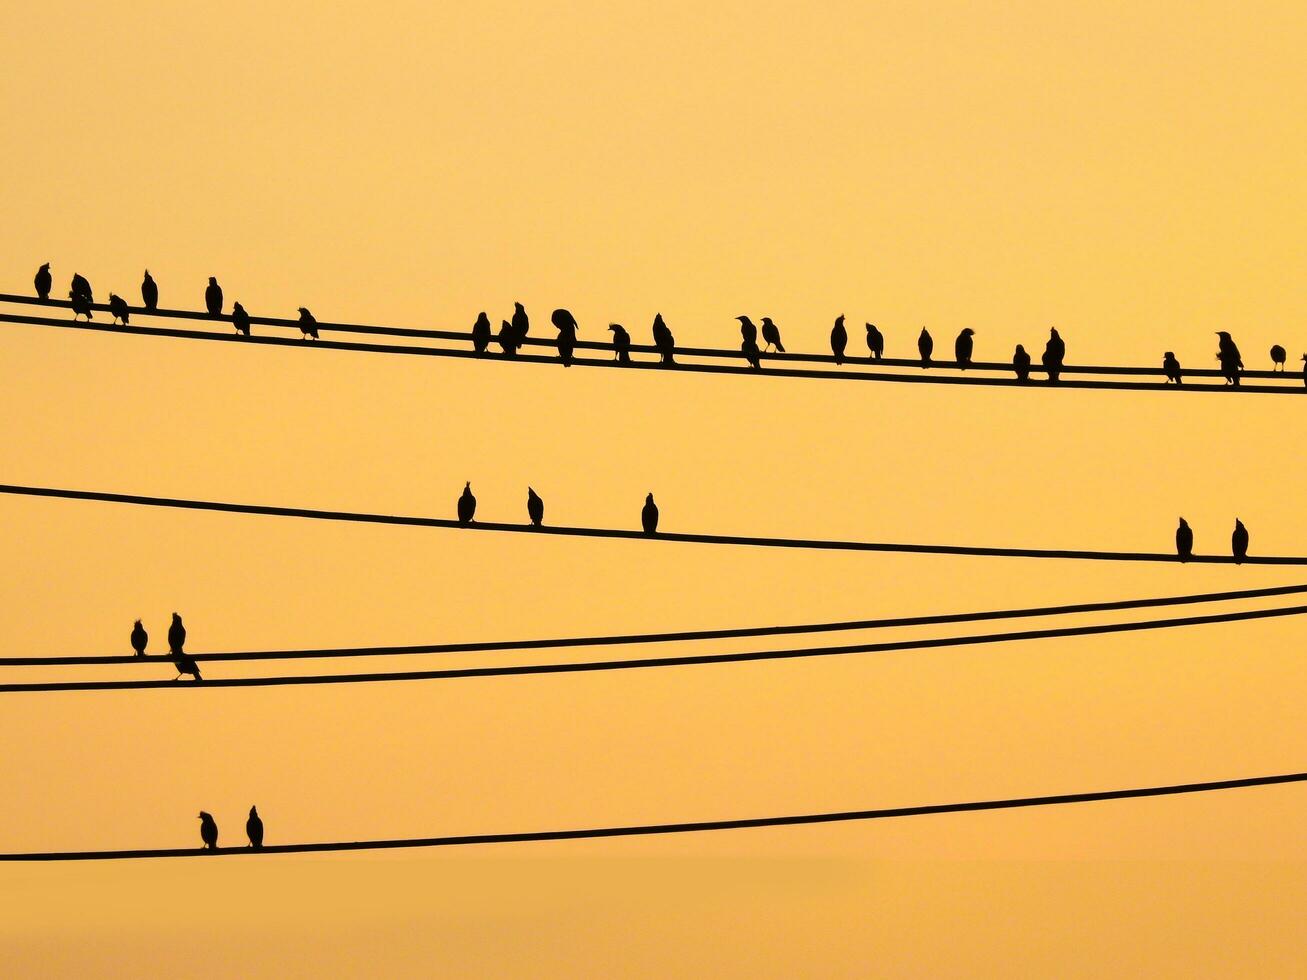 mynas des oiseaux séance sur fils et le coucher du soleil ciel photo